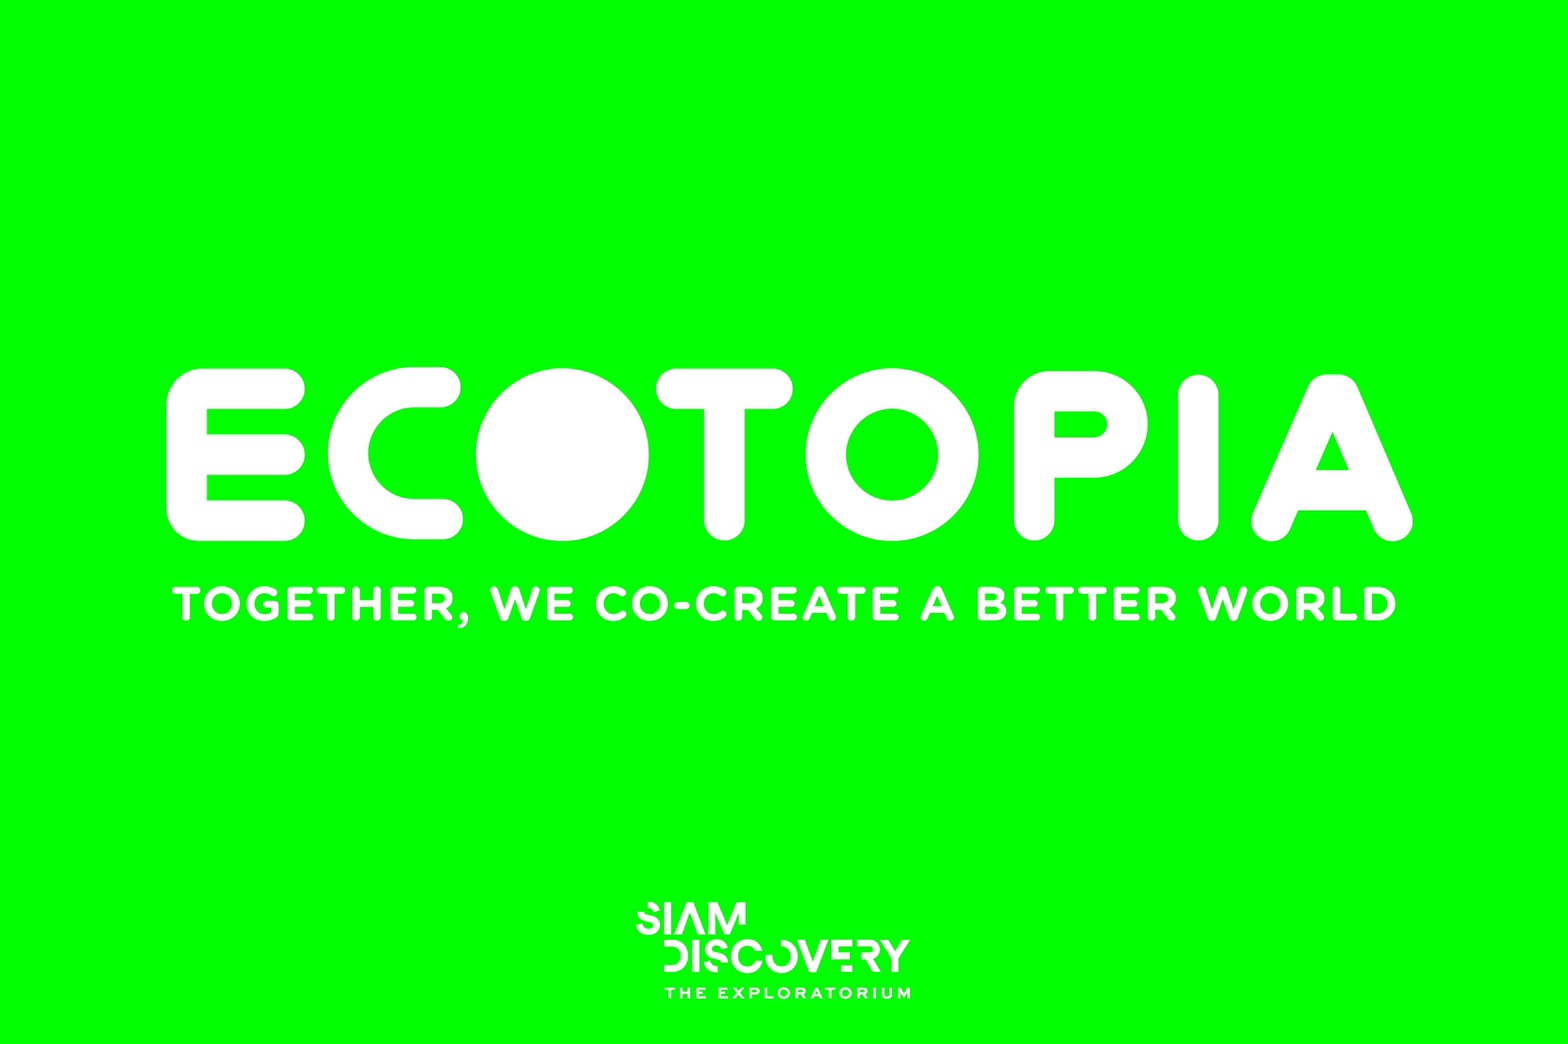 สยามดิสคัฟเวอรี่ ดิเอ็กซ์พลอราทอเรียม ขอเชิญร่วมสร้างปรากฎการณ์รักษ์โลกไปด้วยกัน กับงาน Grand Opening Ecotopia